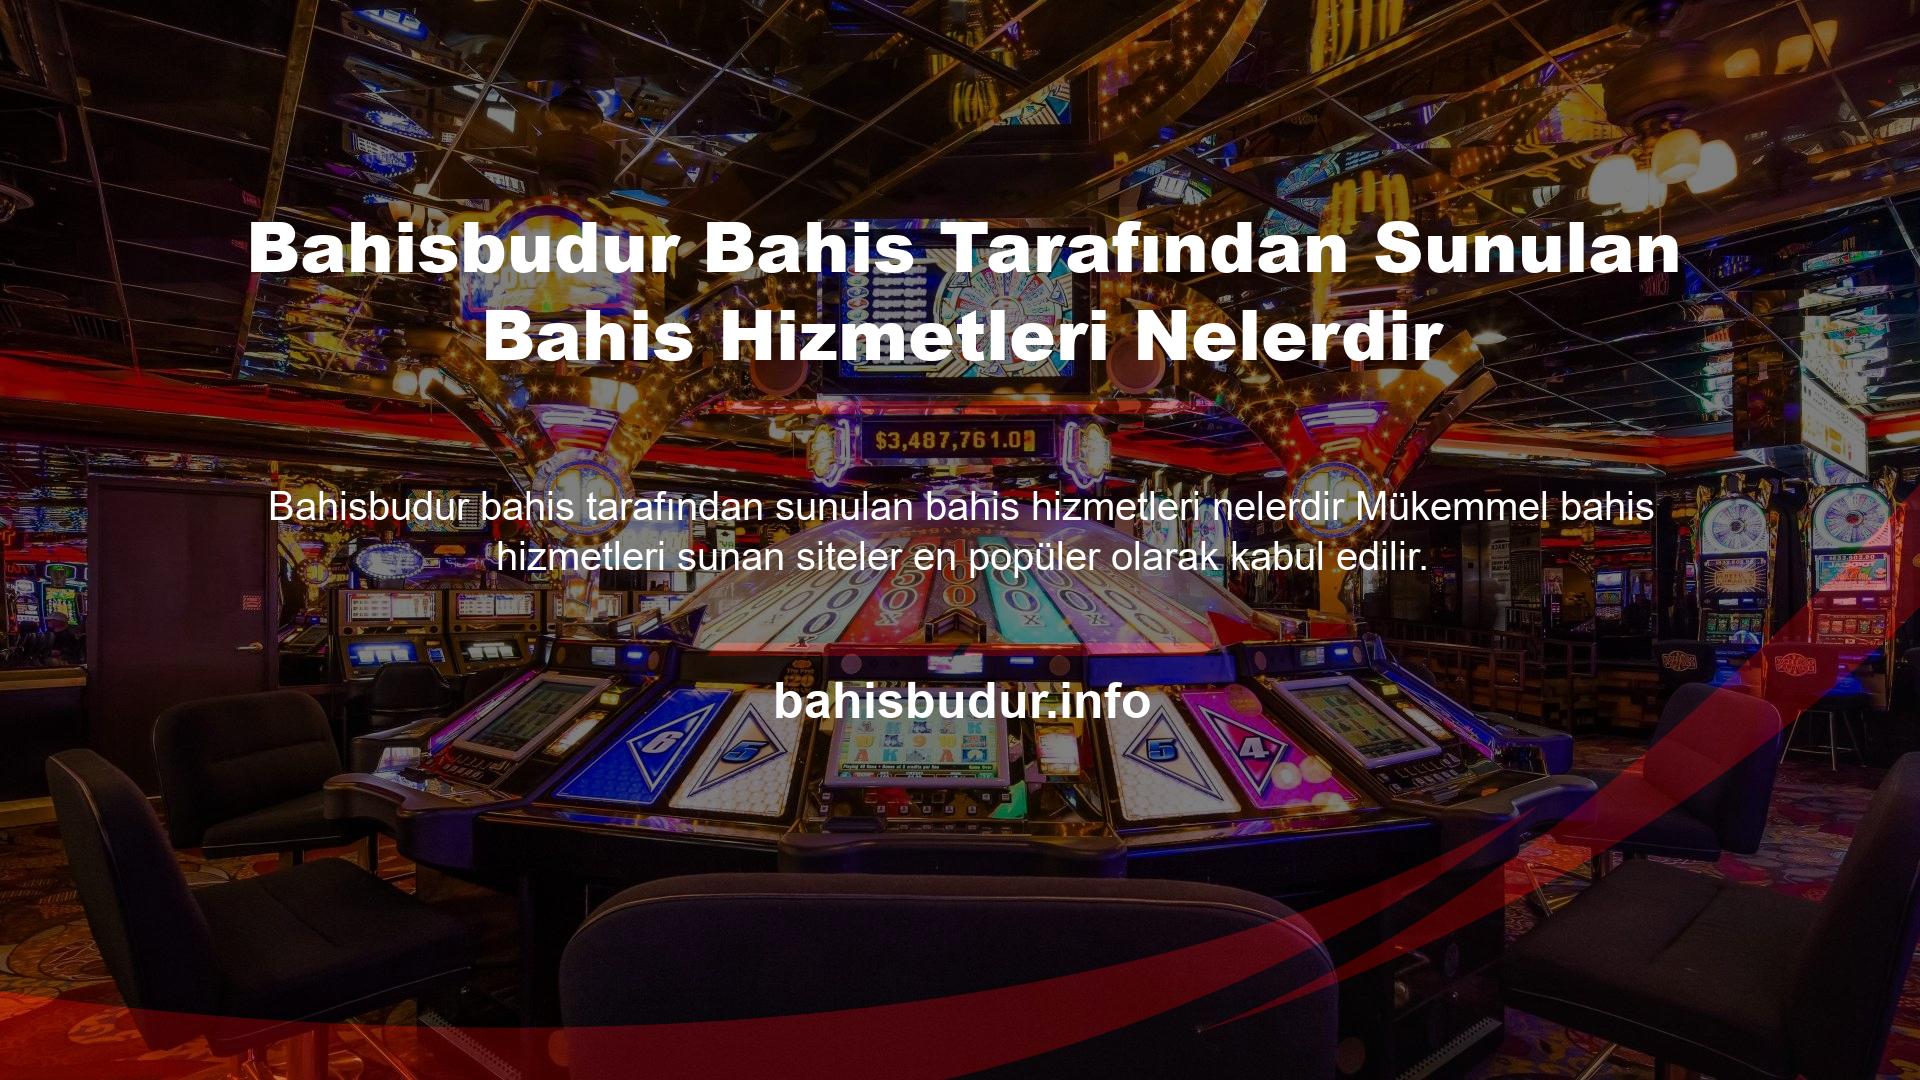 Casino endüstrisi, aralarından seçim yapabileceğiniz yüzlerce web sitesi bulunan devasa bir sektördür